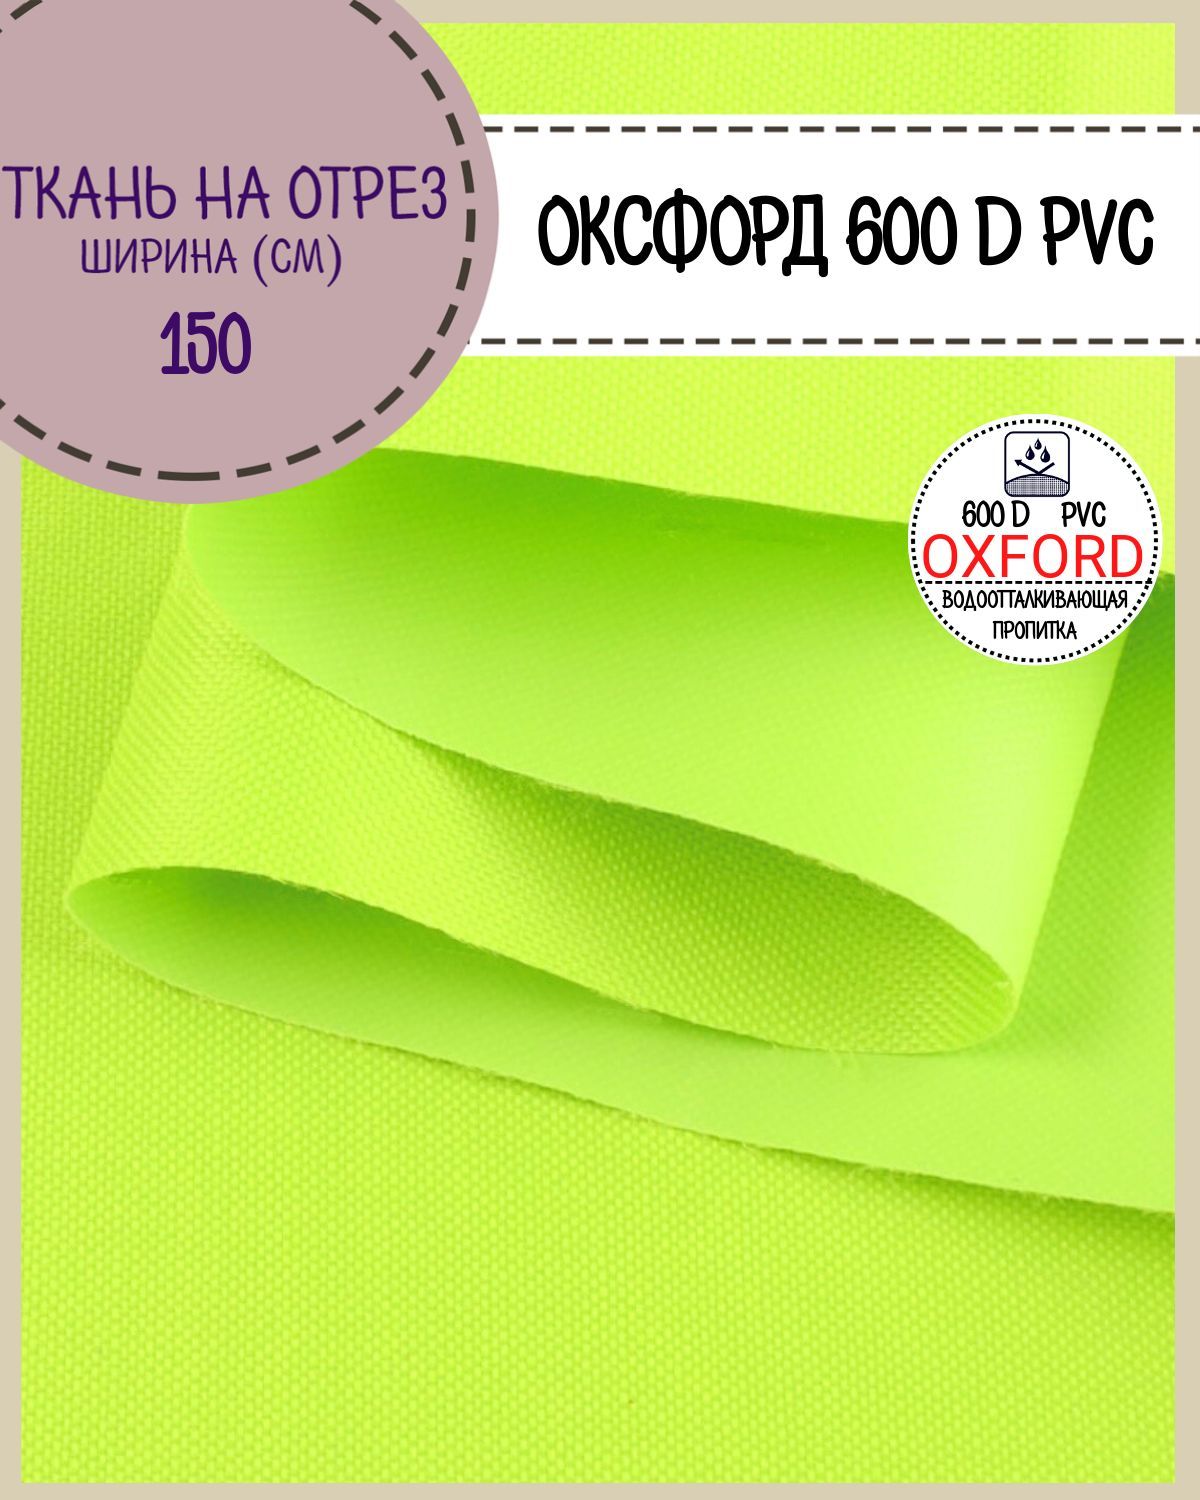 Ткань Оксфорд Любодом 600D PVC водоотталкивающая, цв. неон-лимон, на отрез, 150х100 см